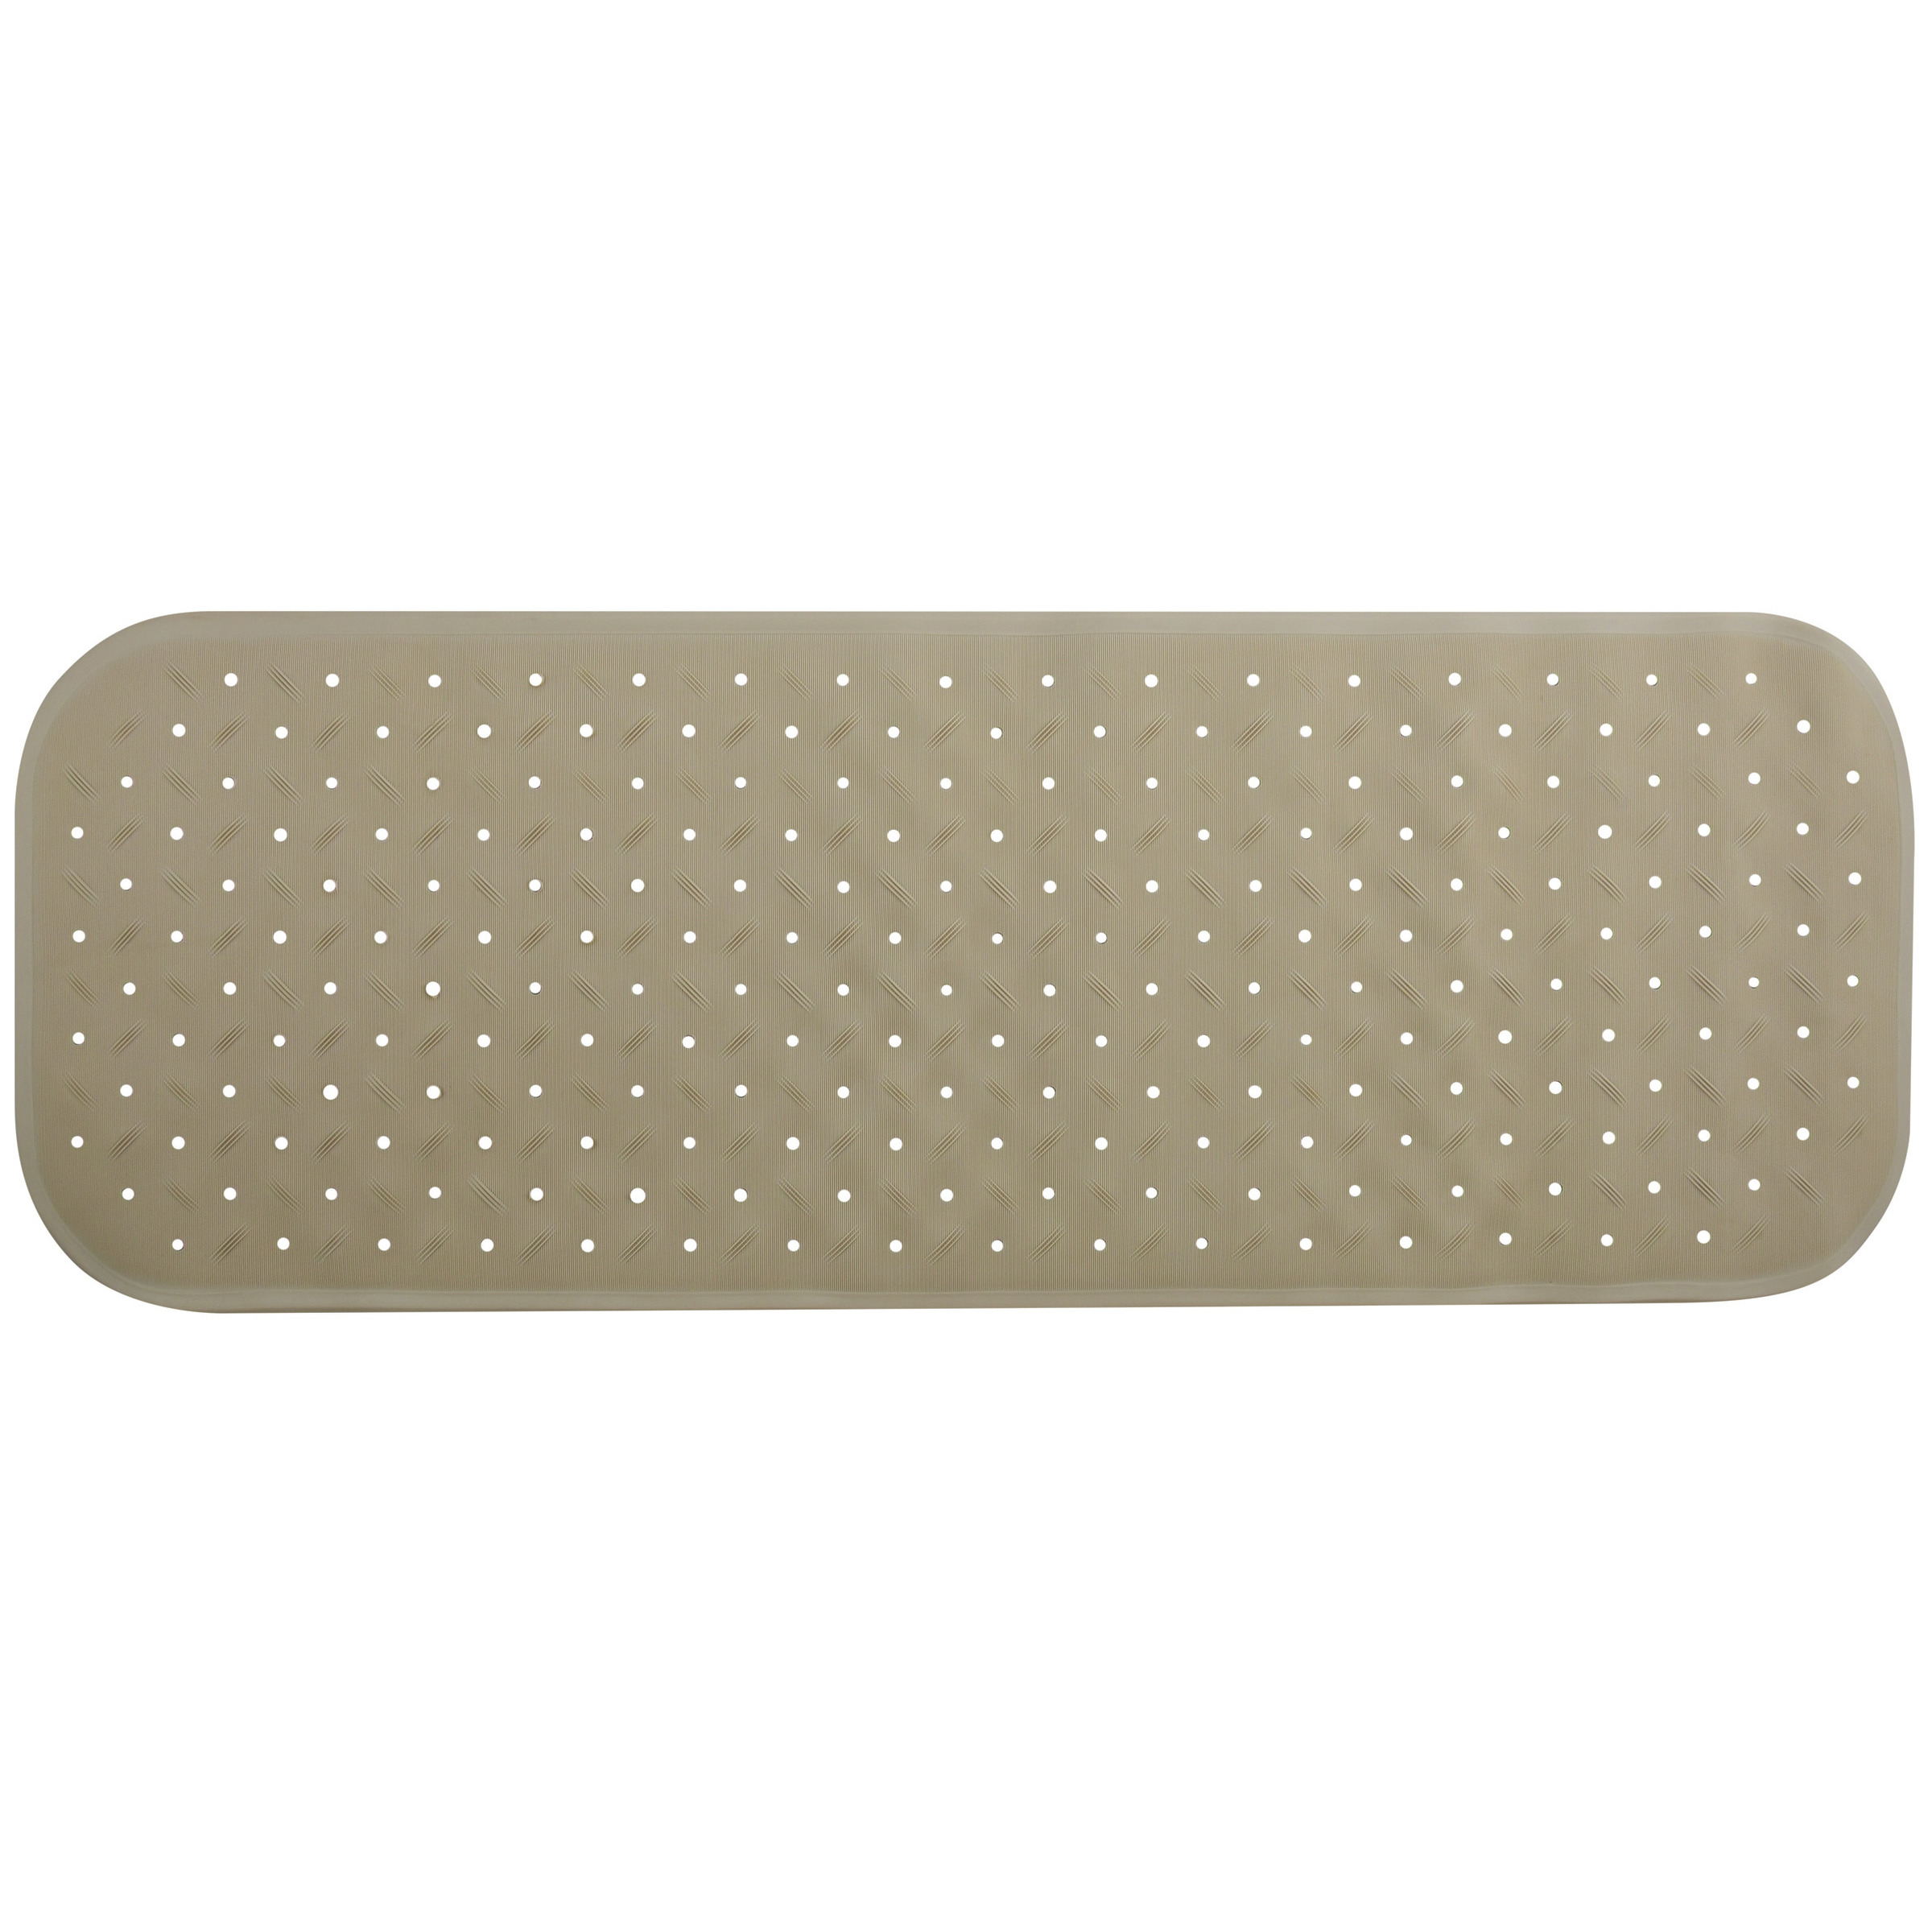 Douche-bad anti-slip mat badkamer rubber beige 36 x 97 cm rechthoek XXL-size